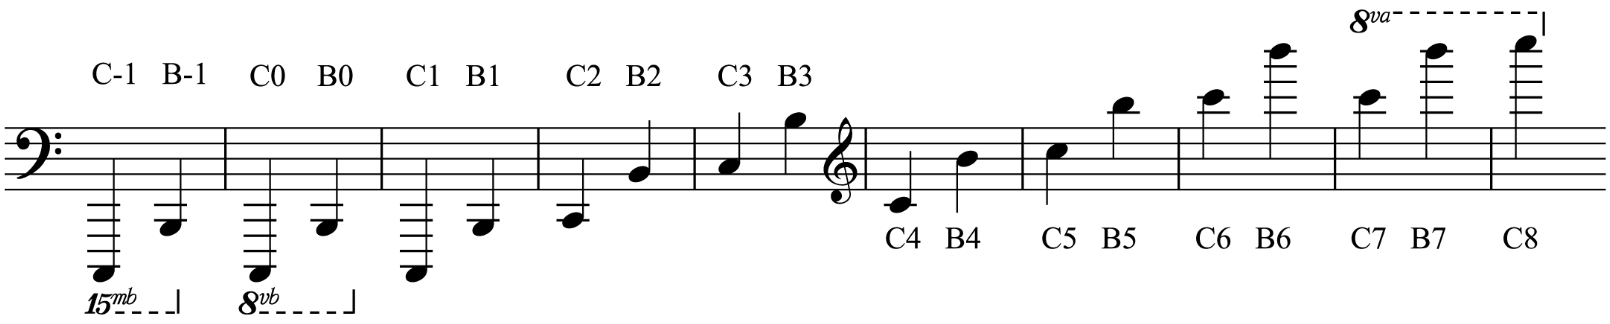 Identification des octaves et des notes (Scientific Pitch Notation)